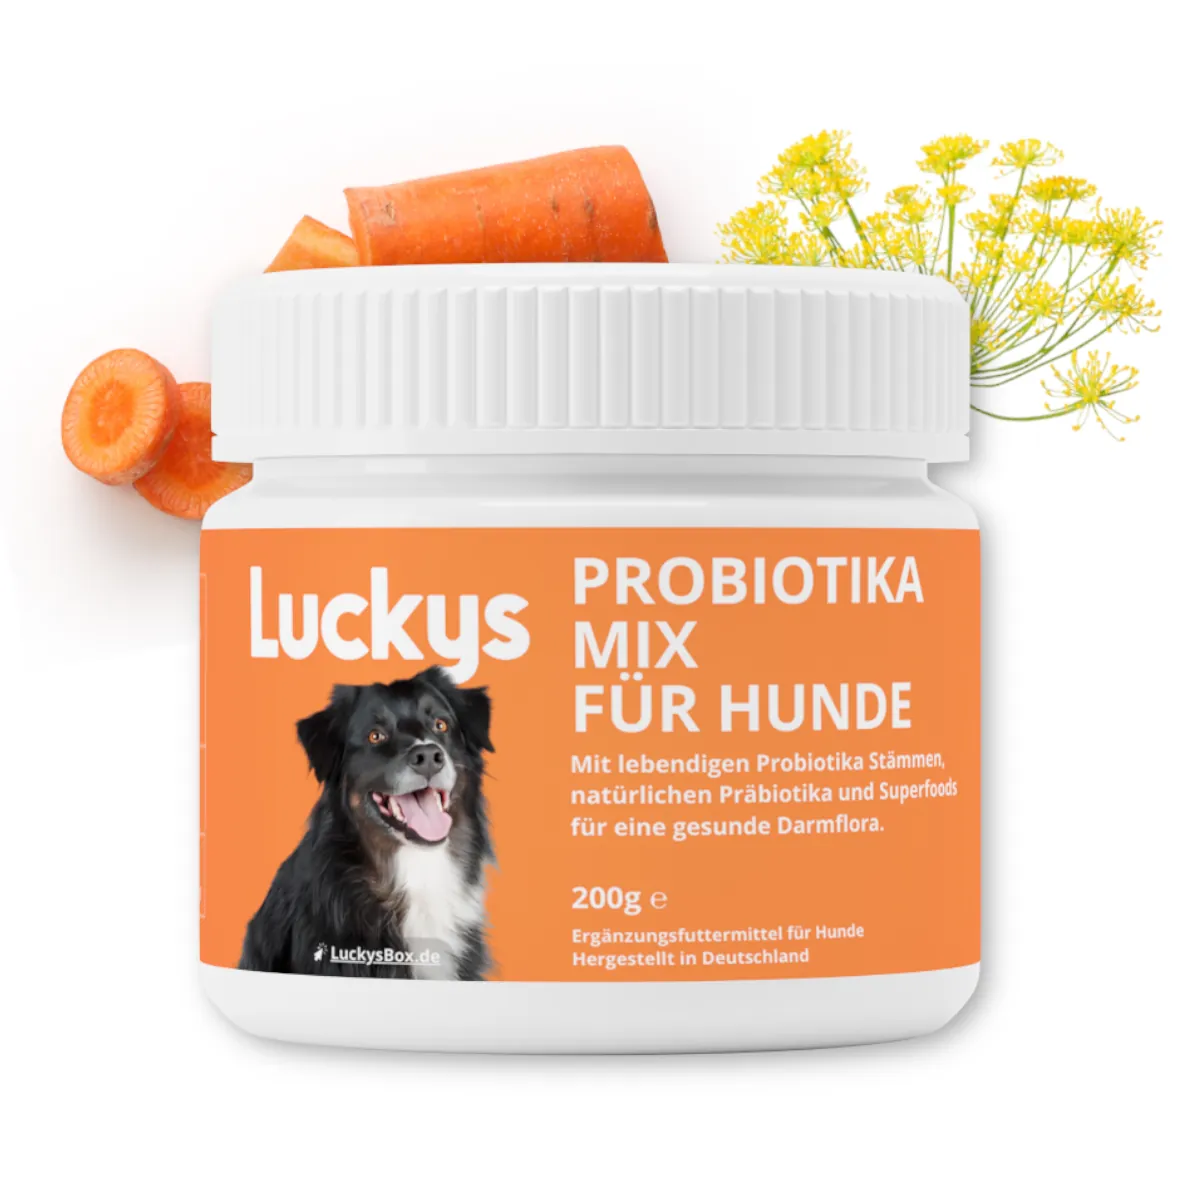 Luckys Probiotika-Mix für Hunde im Test: Dosierung & Wirkung